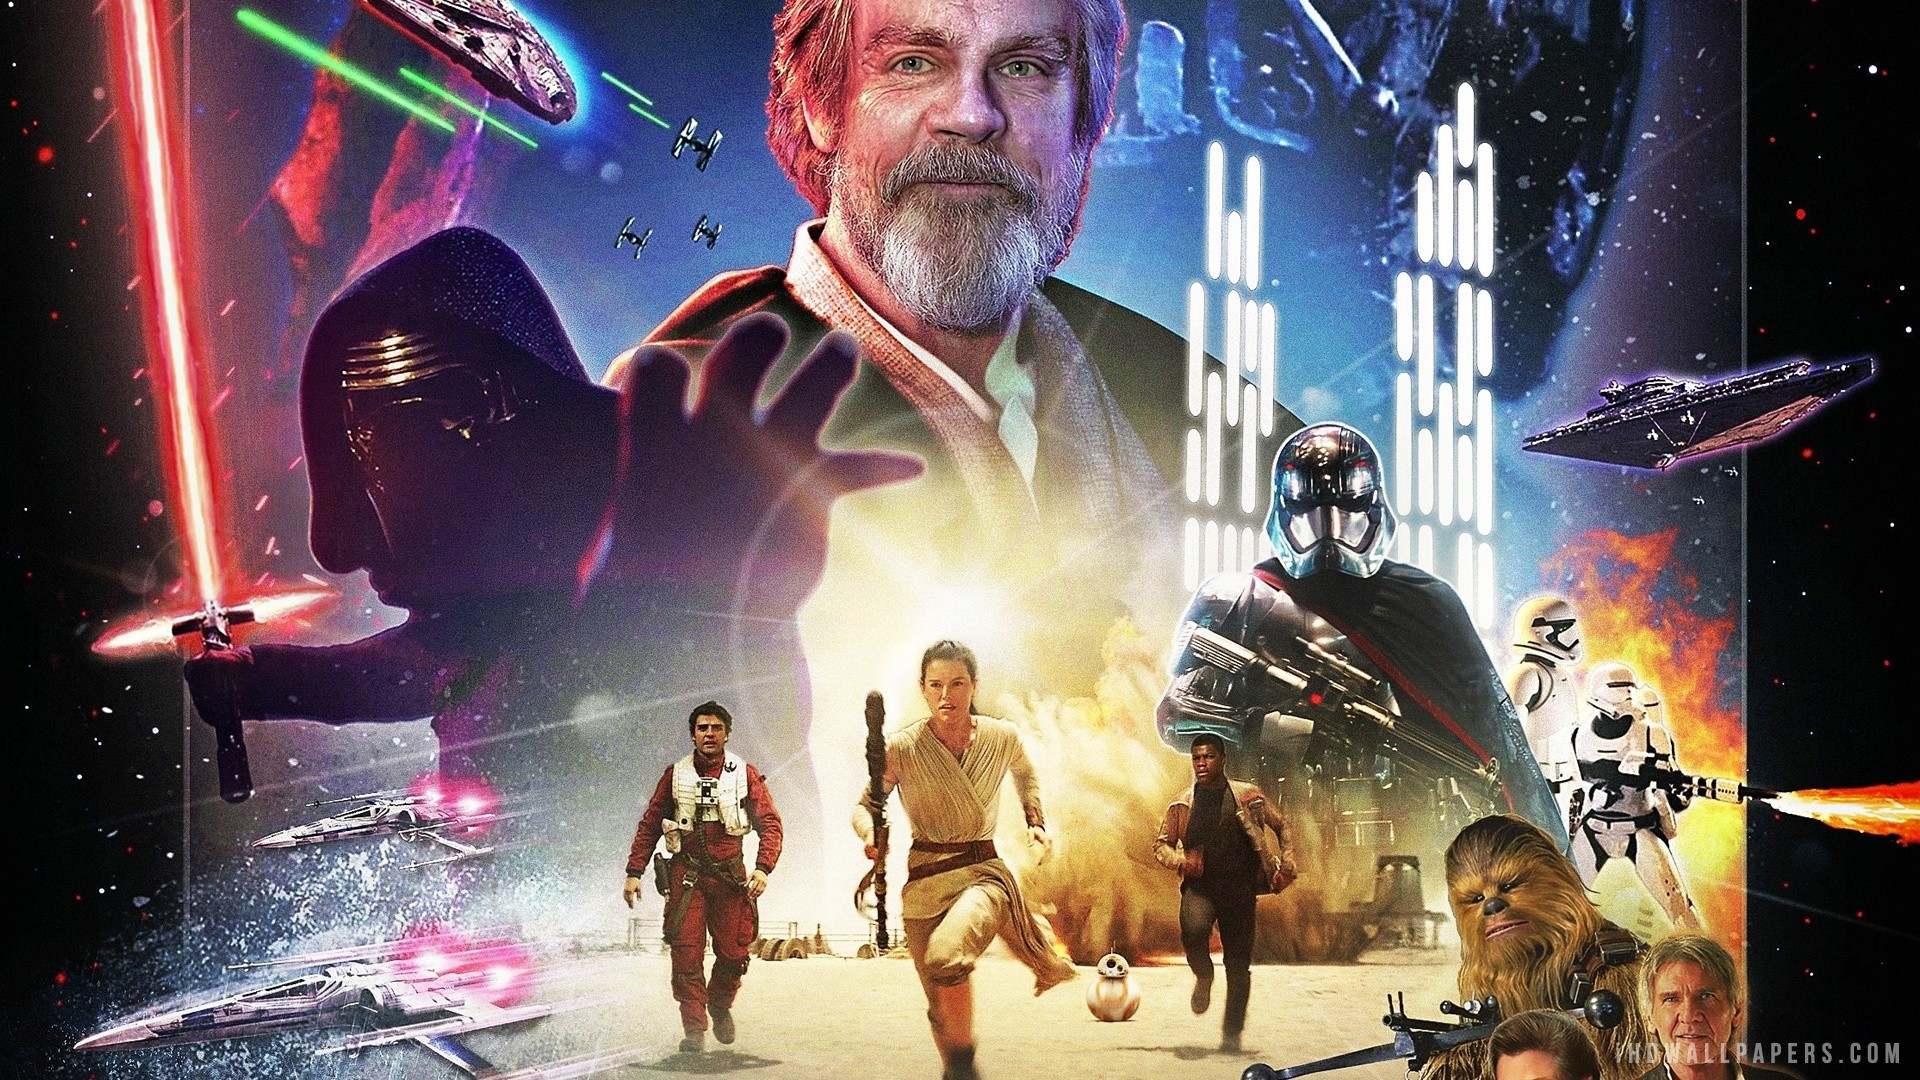 the force awakens full movie